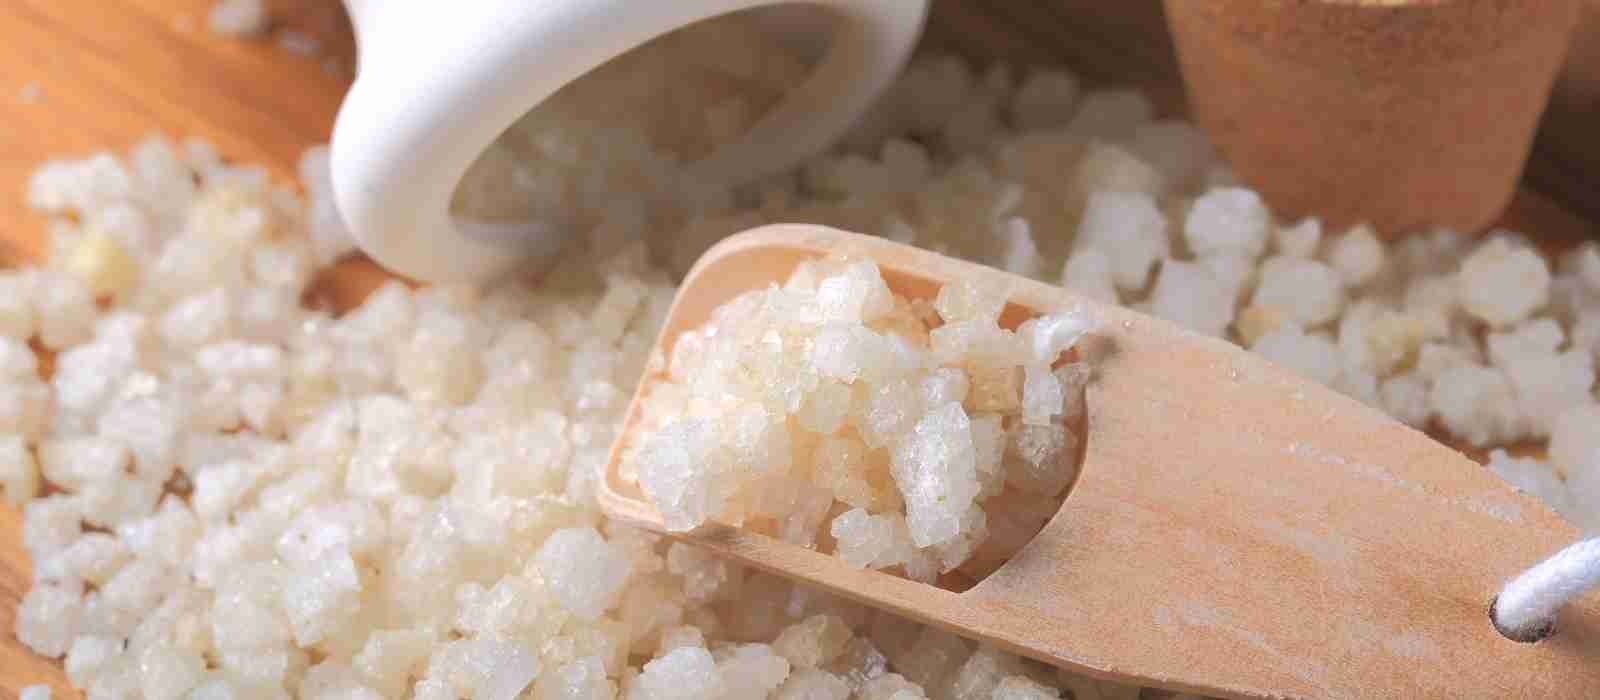 Are Epsom Salts Good for Diaper Rash